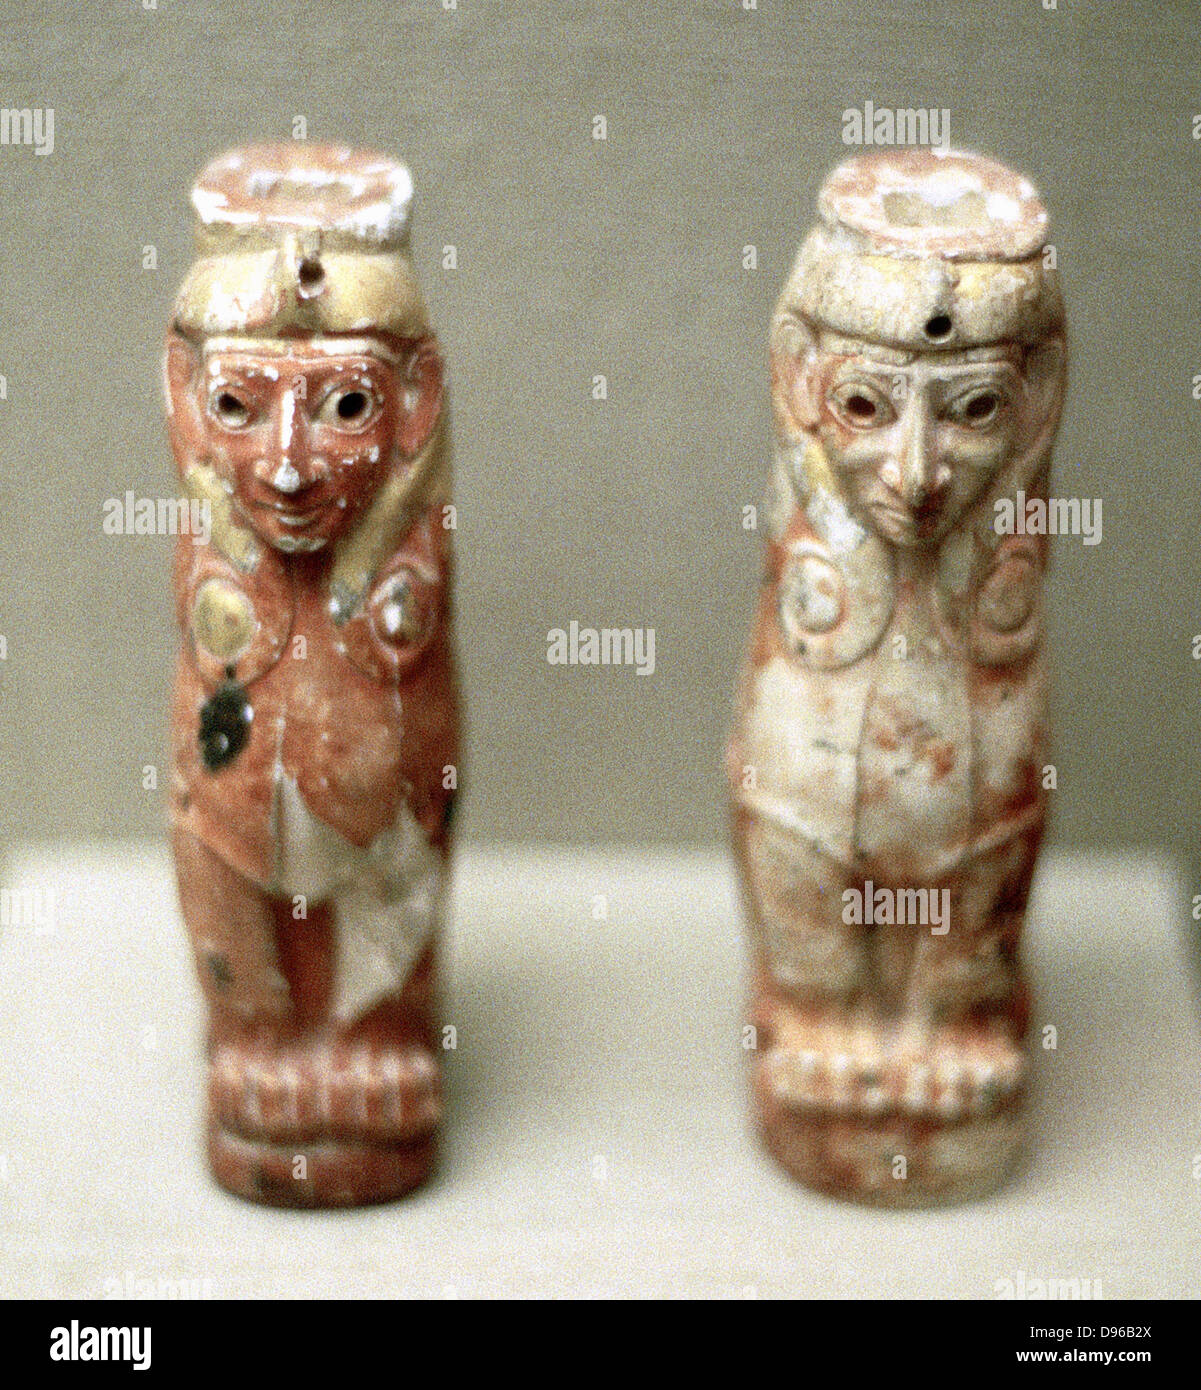 Los artefactos (Esfinge figuras) de Turquía, 1800 A.C. Foto de stock